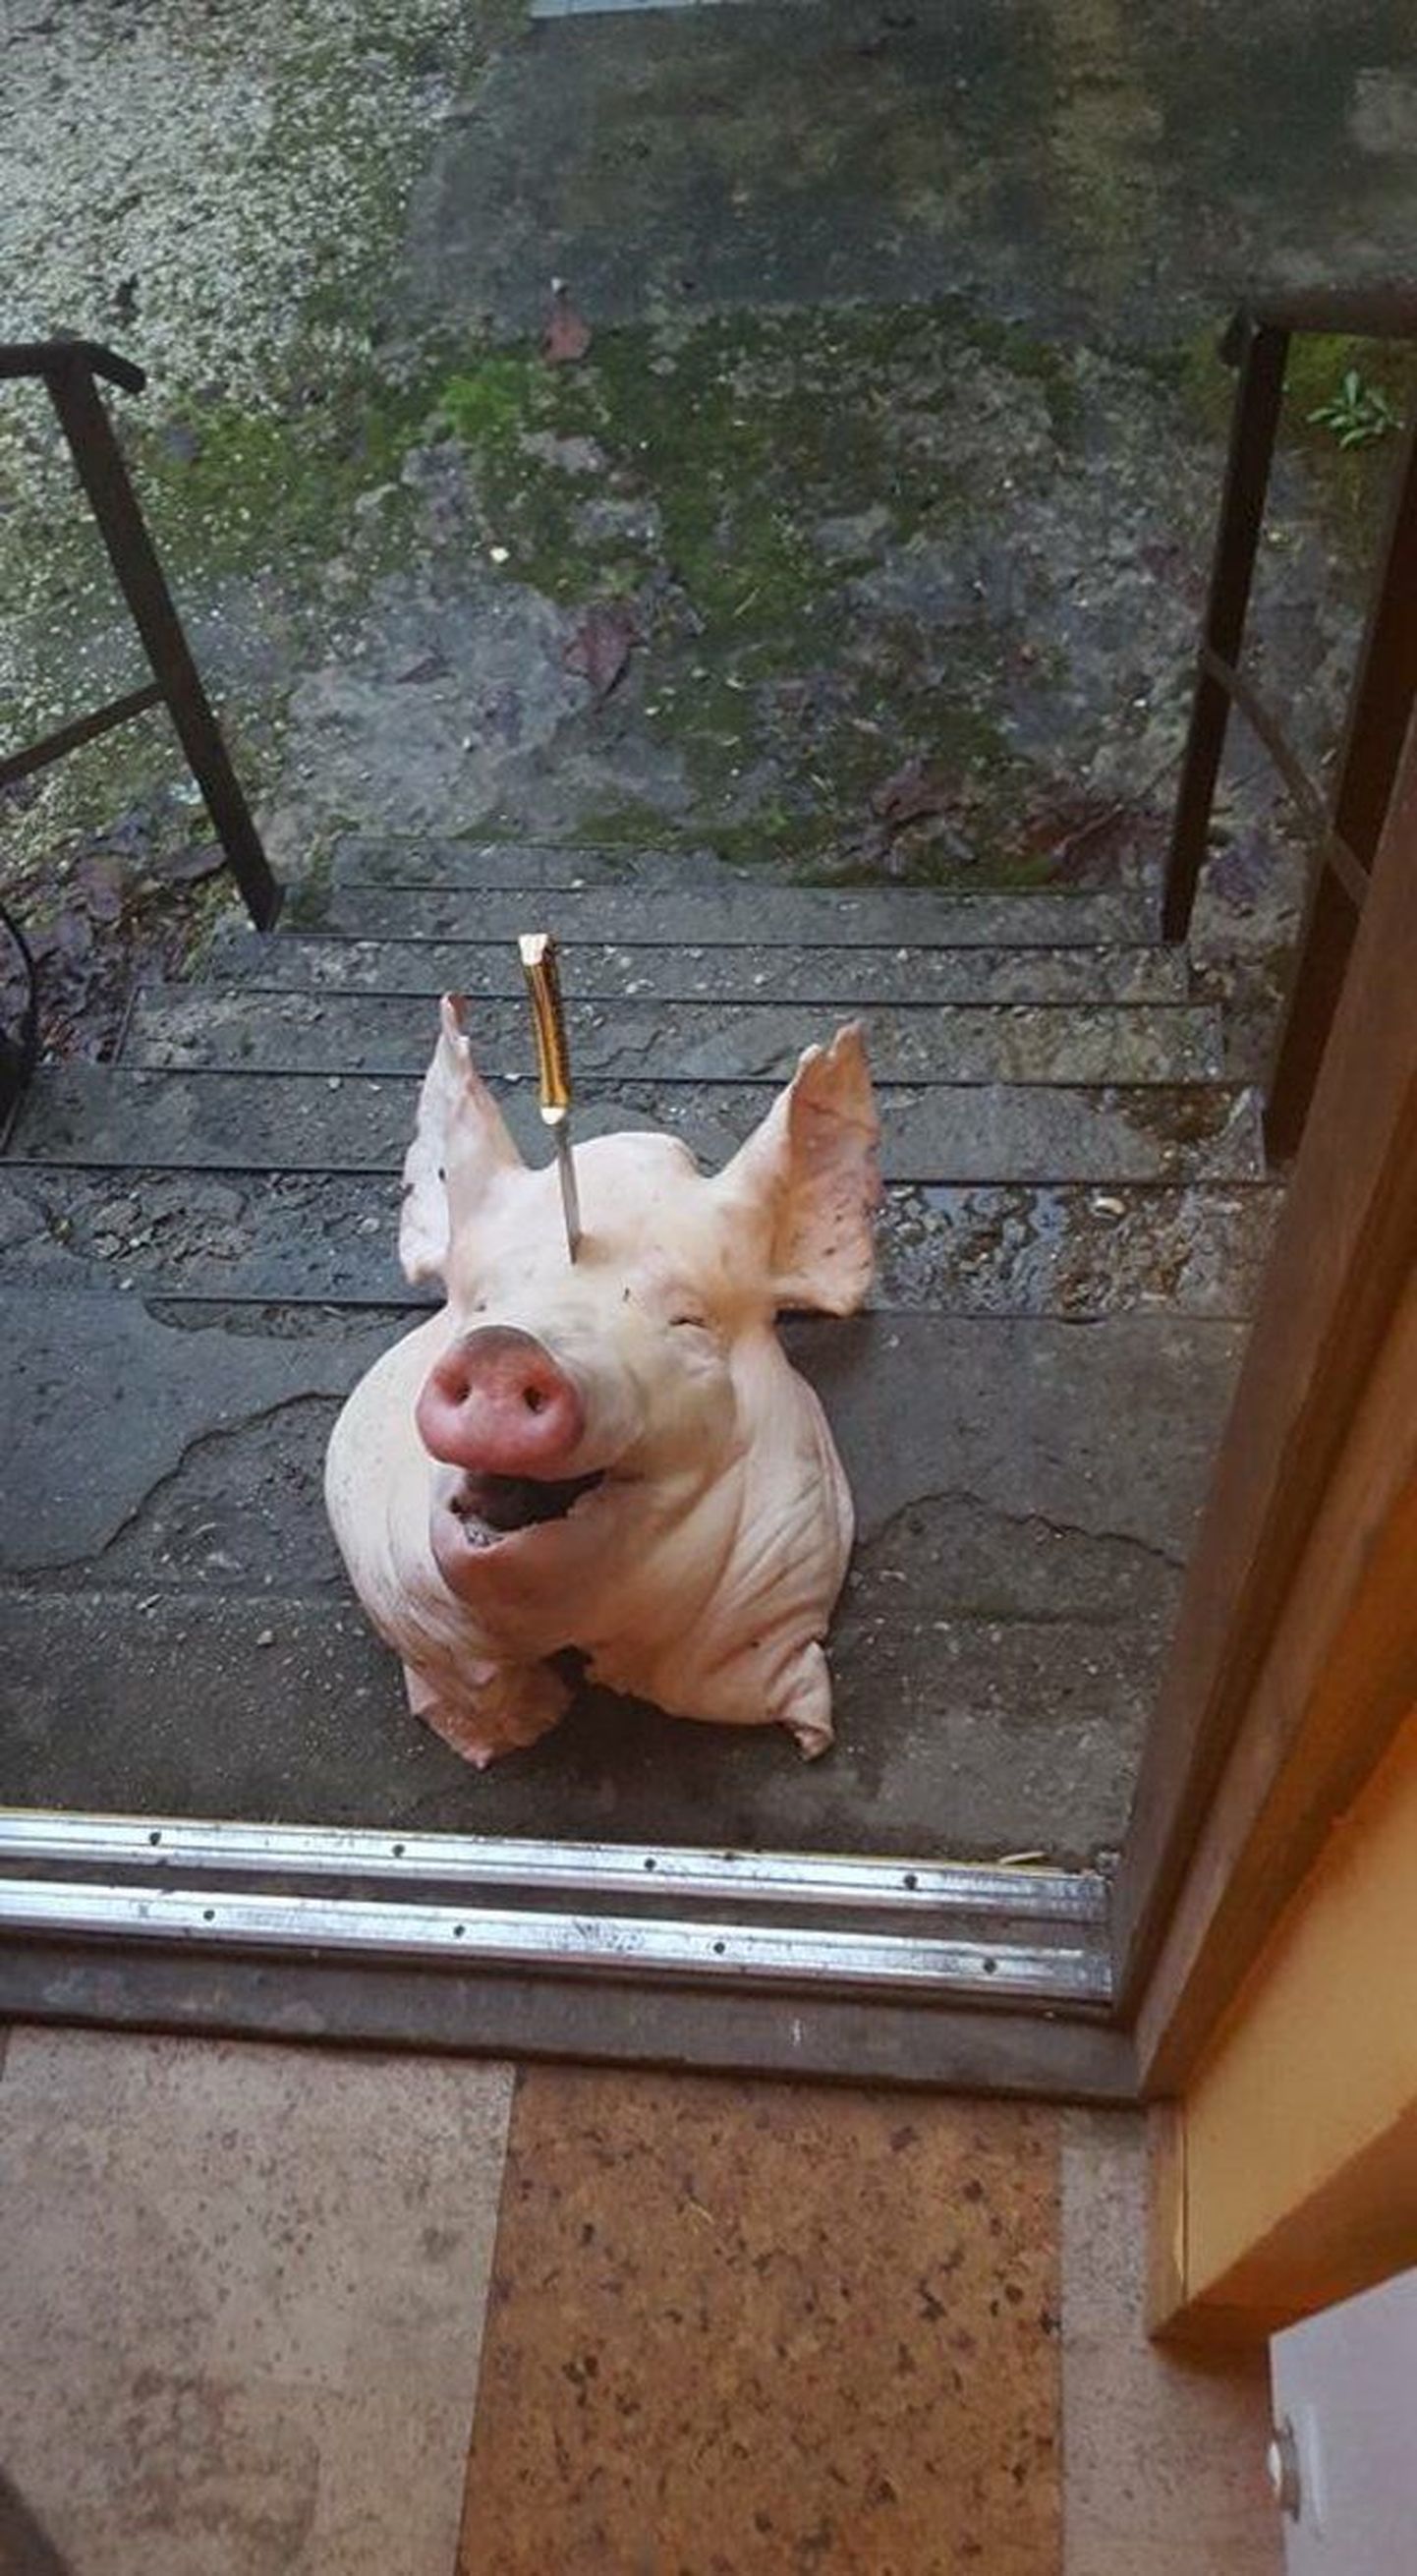 Предприниматель обнаружил у двери своего дома голову свиньи, проткнутую ножом.